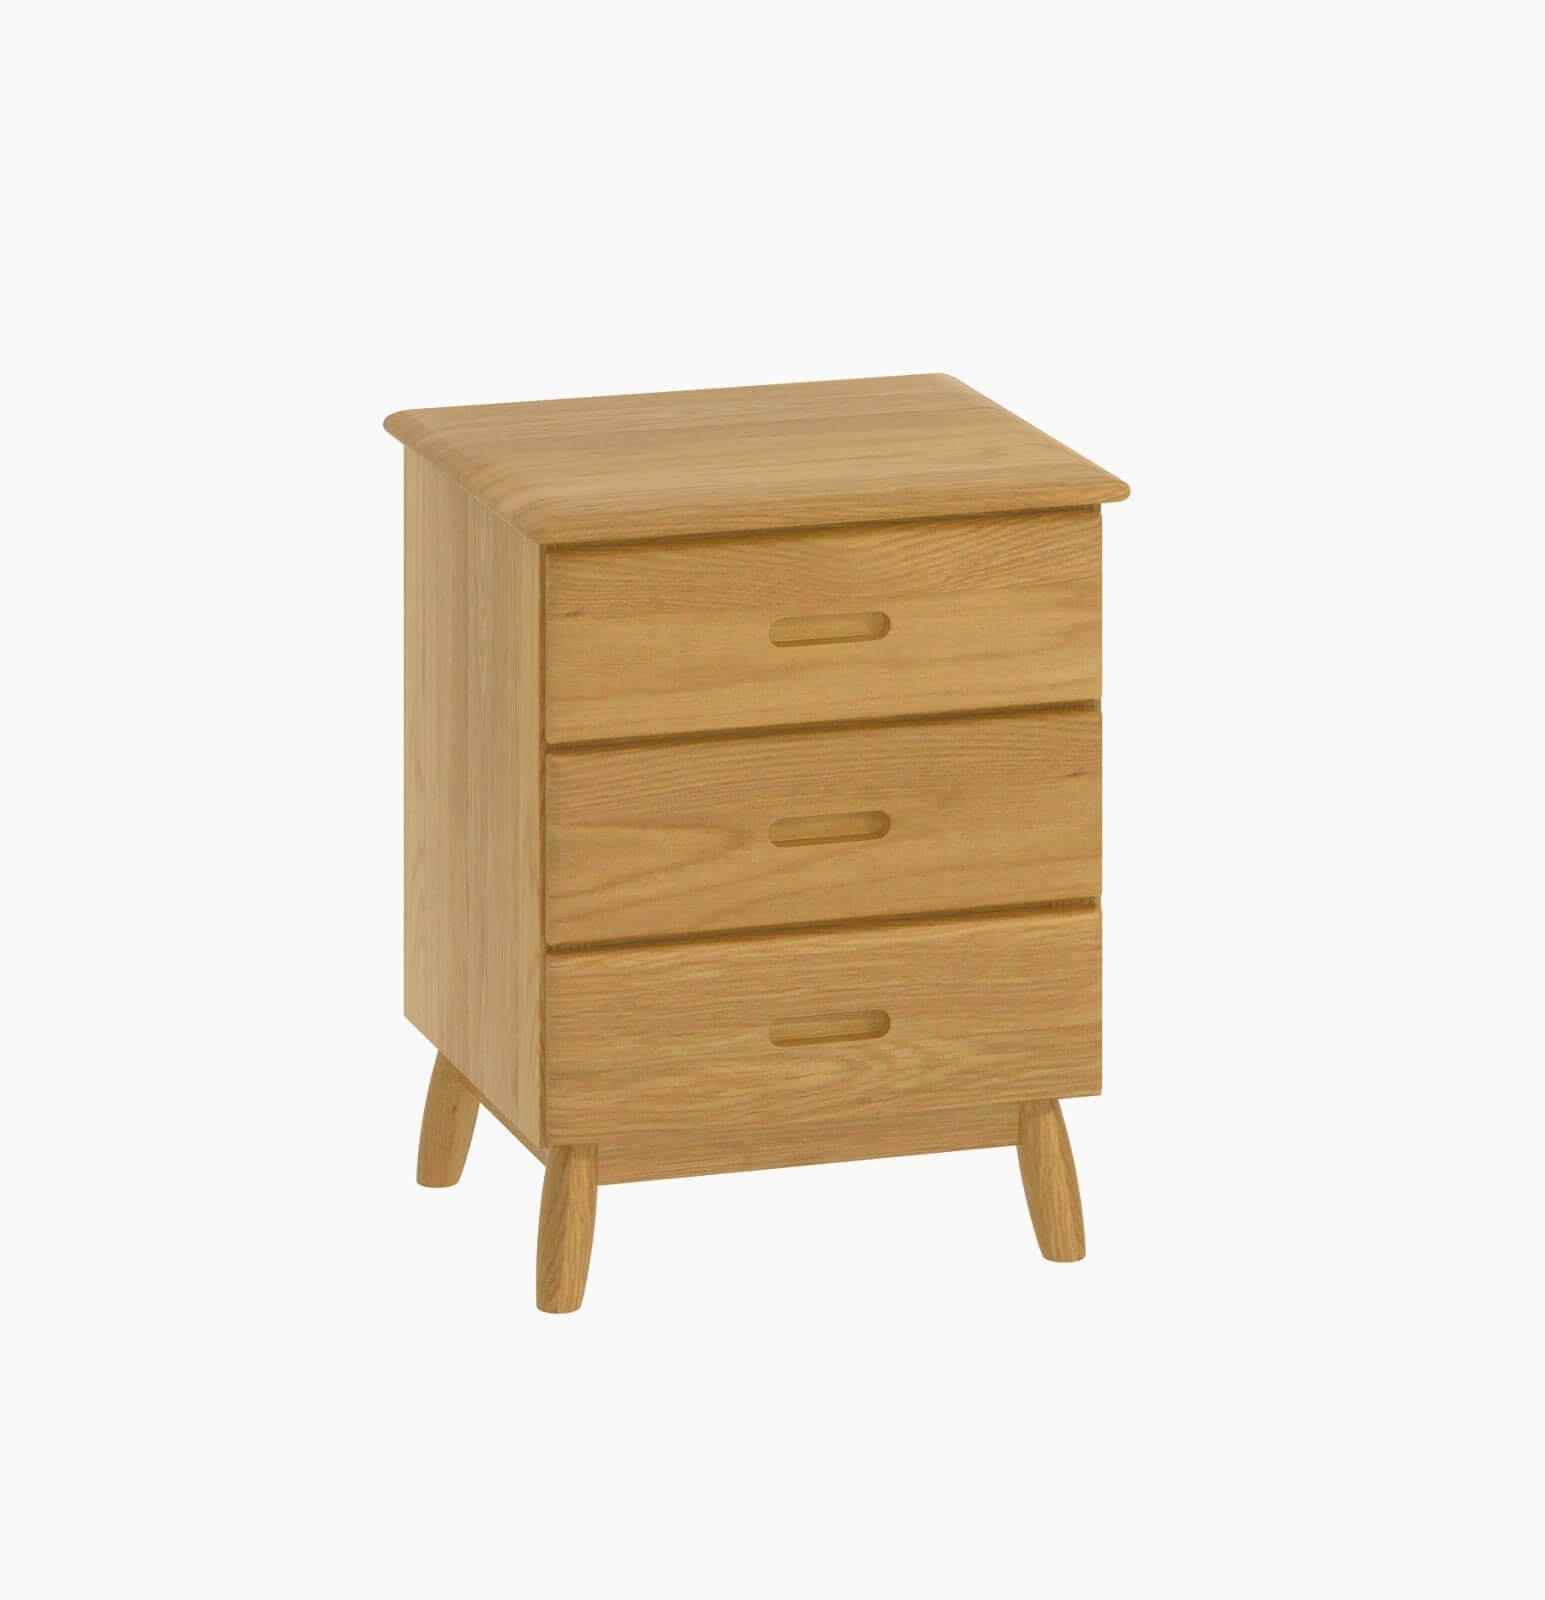 Showing image for Bergen 3-drawer bedside cabinet